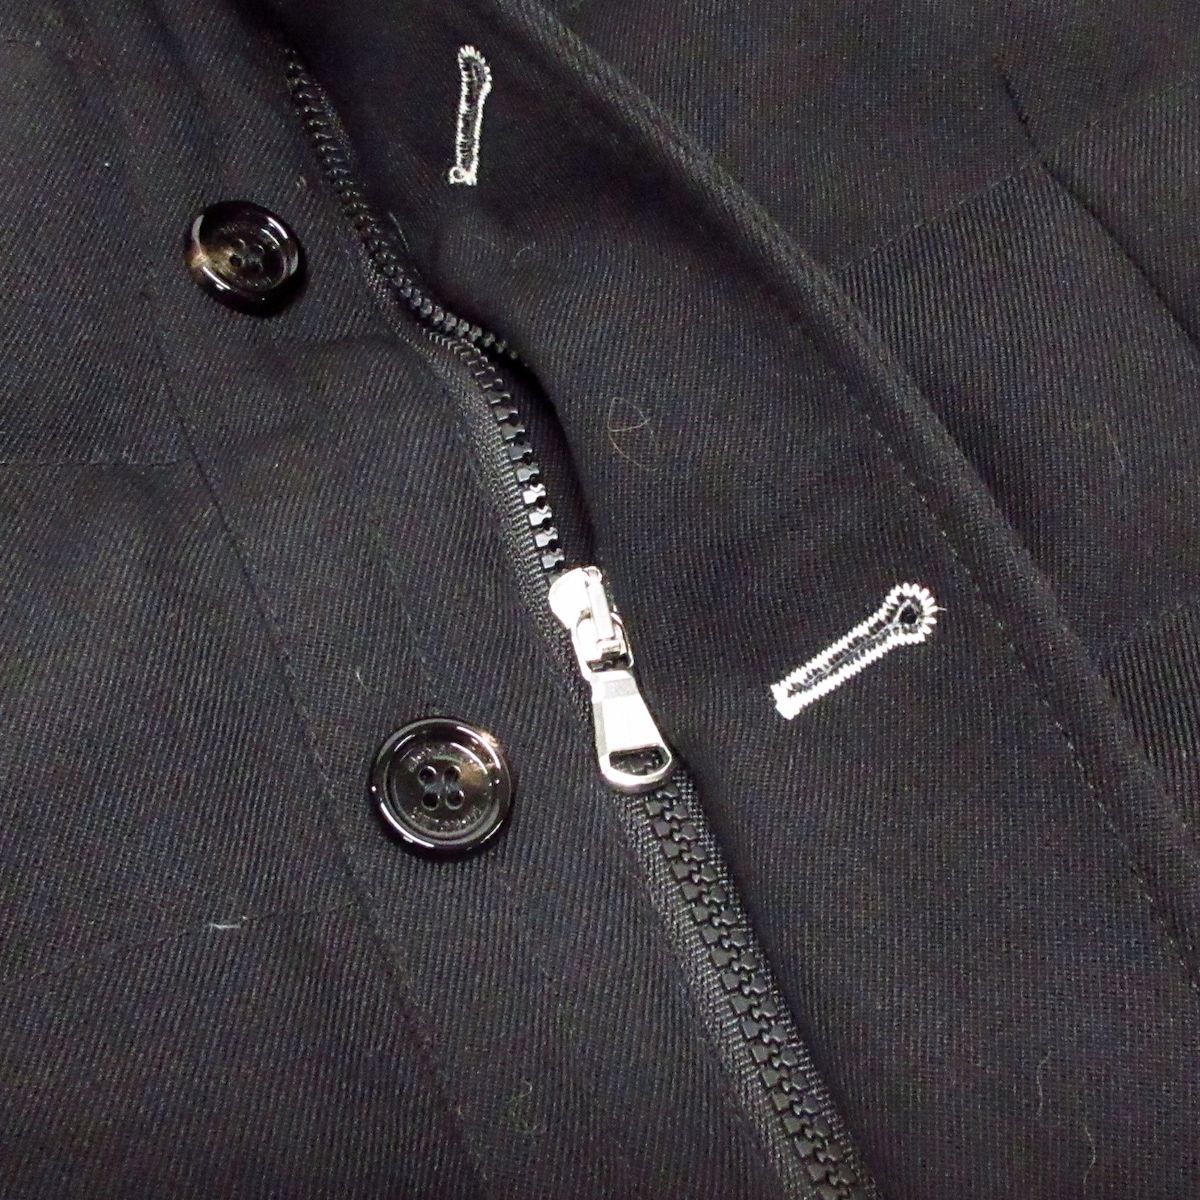 MONCLER(モンクレール) ダウンコート サイズ3 L メンズ - 黒 長袖 